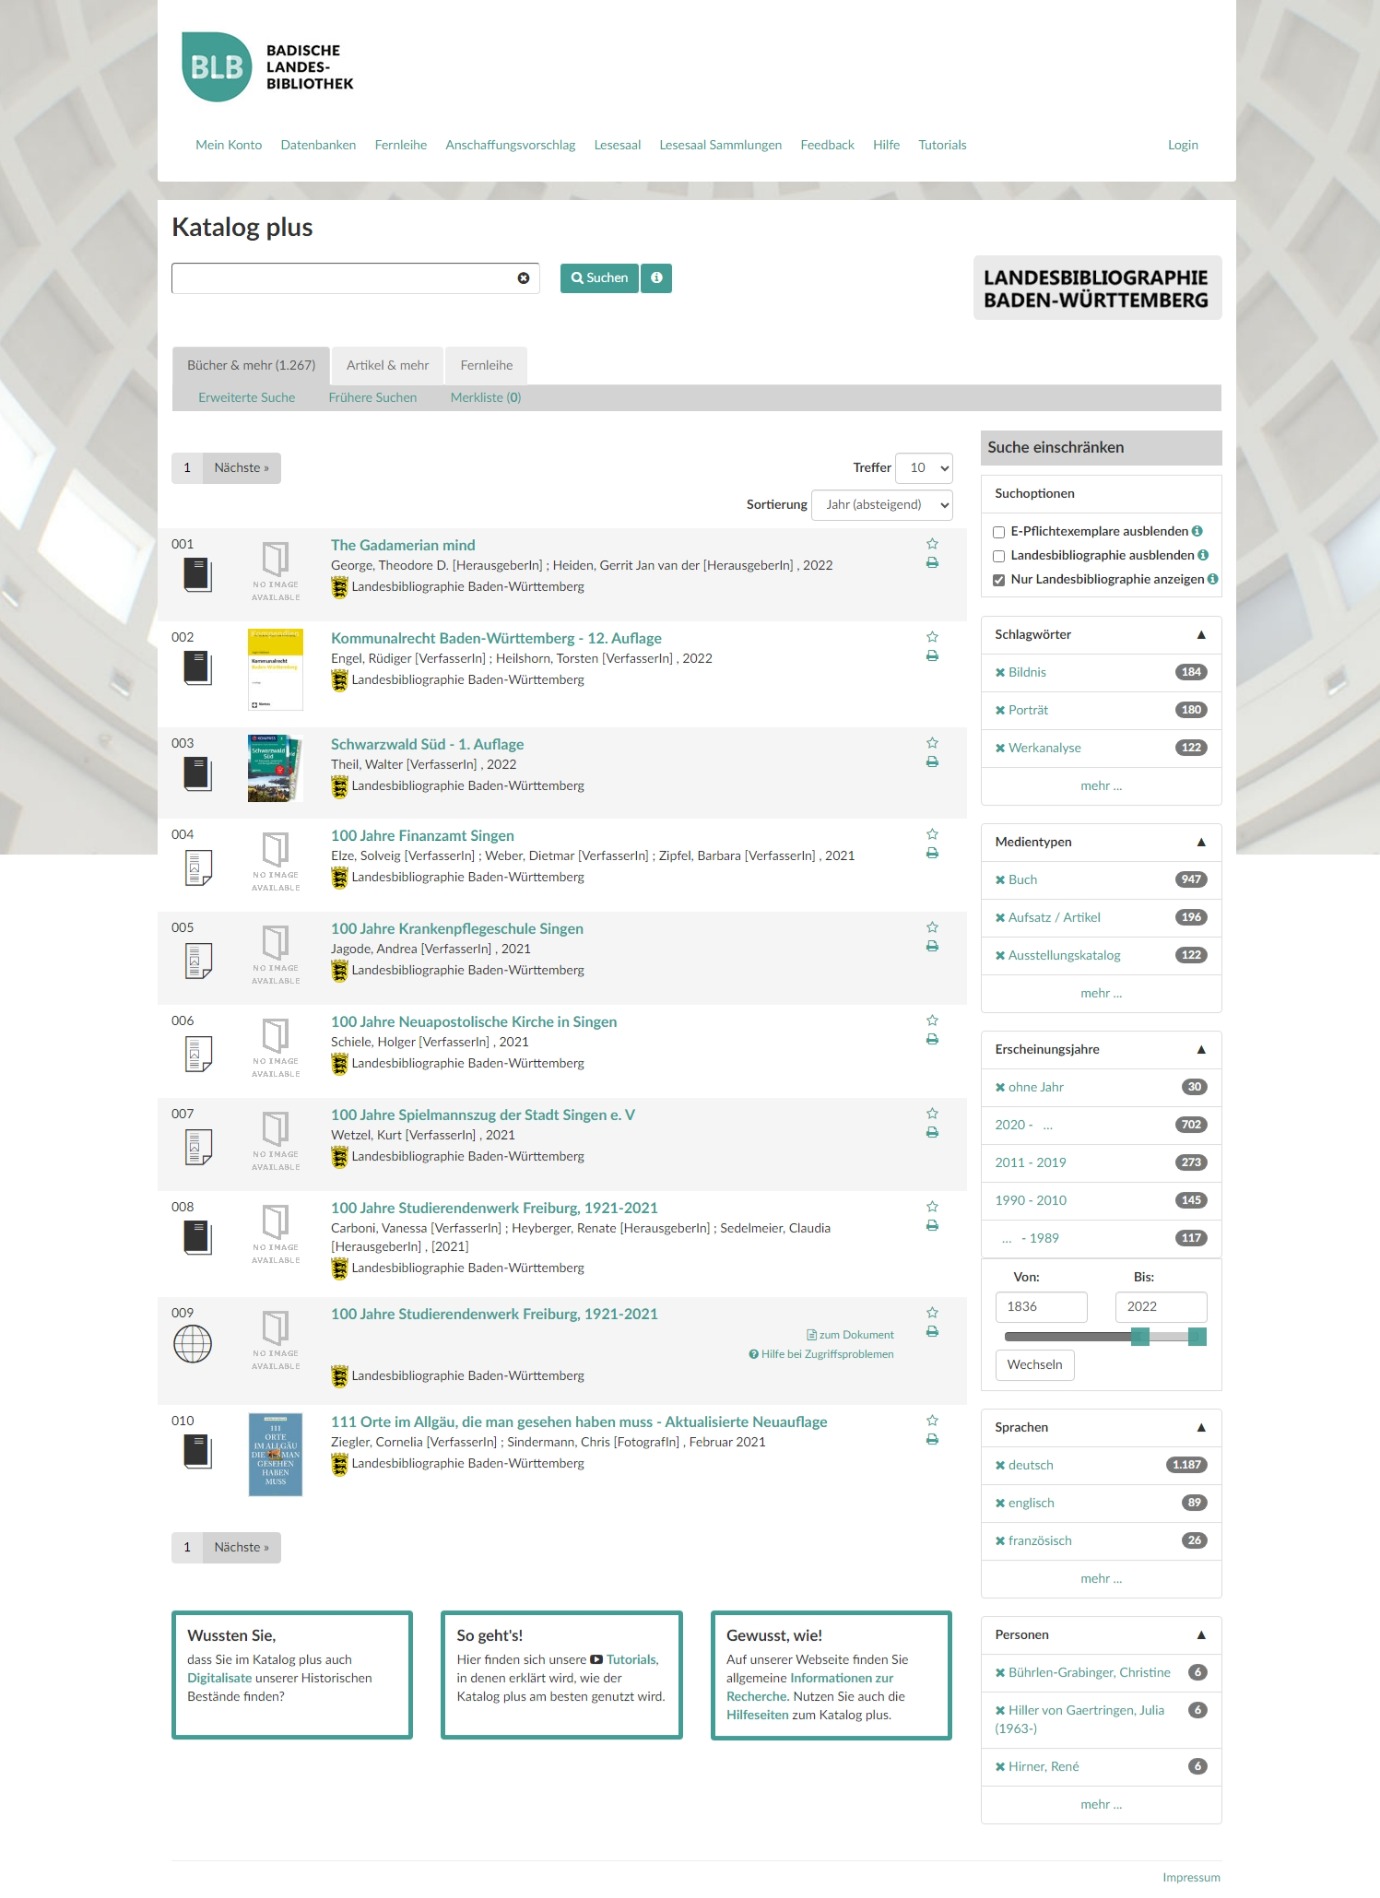 Die Abbildung zeigt einen Screenshot der Landesbibliographie im Katalog plus der Badischen Landesbibliothek vom 20.11.2023.